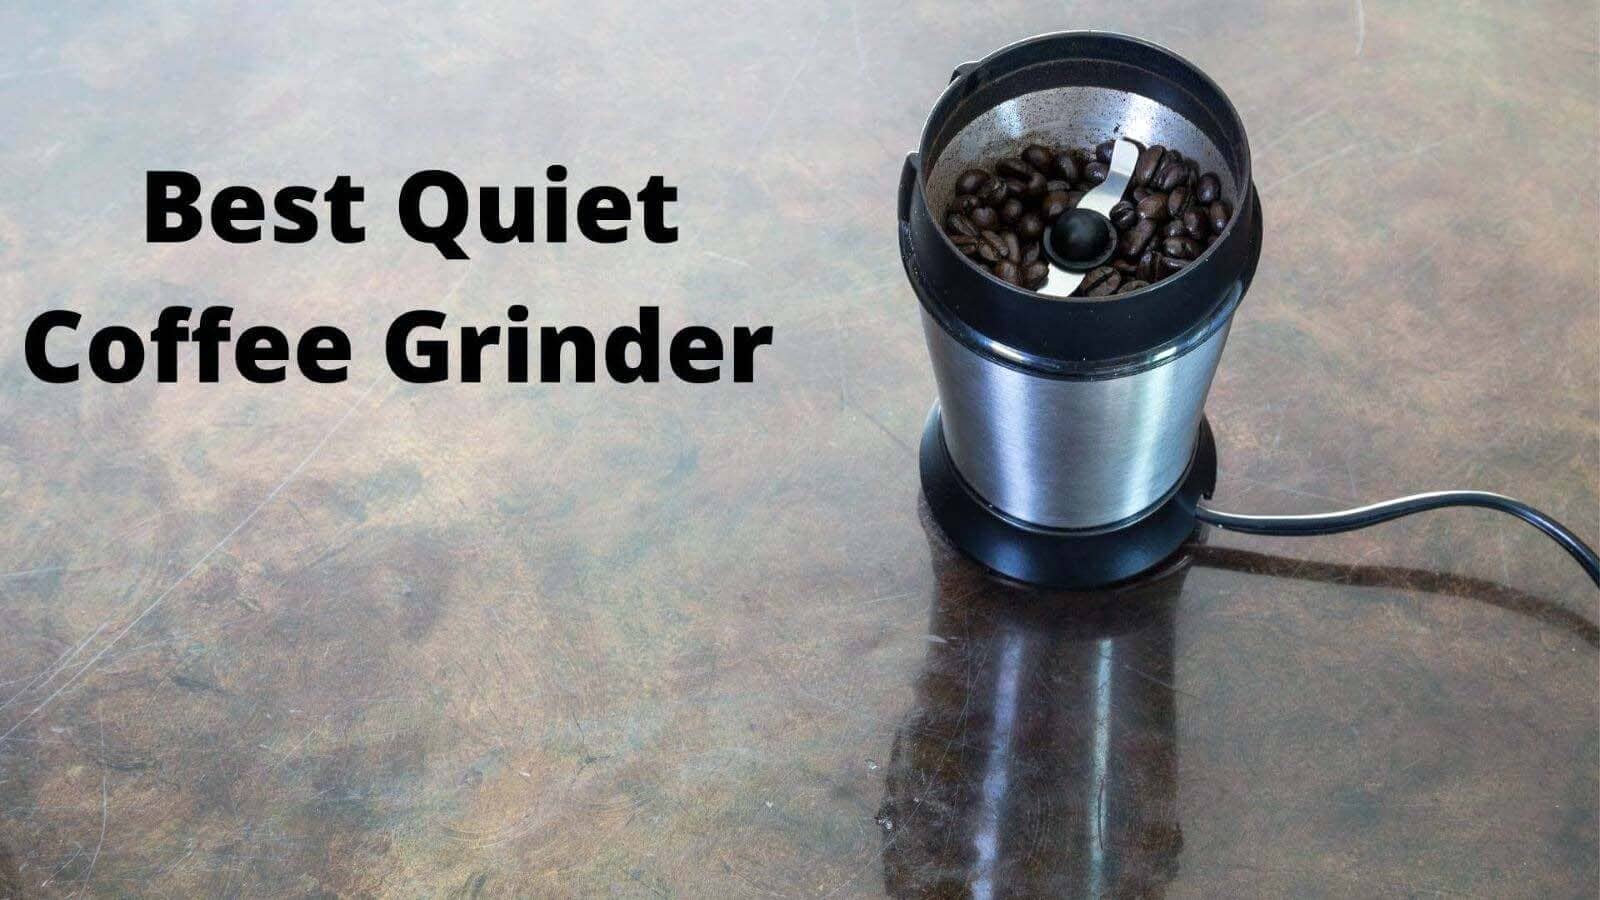 Best Quiet Coffee Grinder